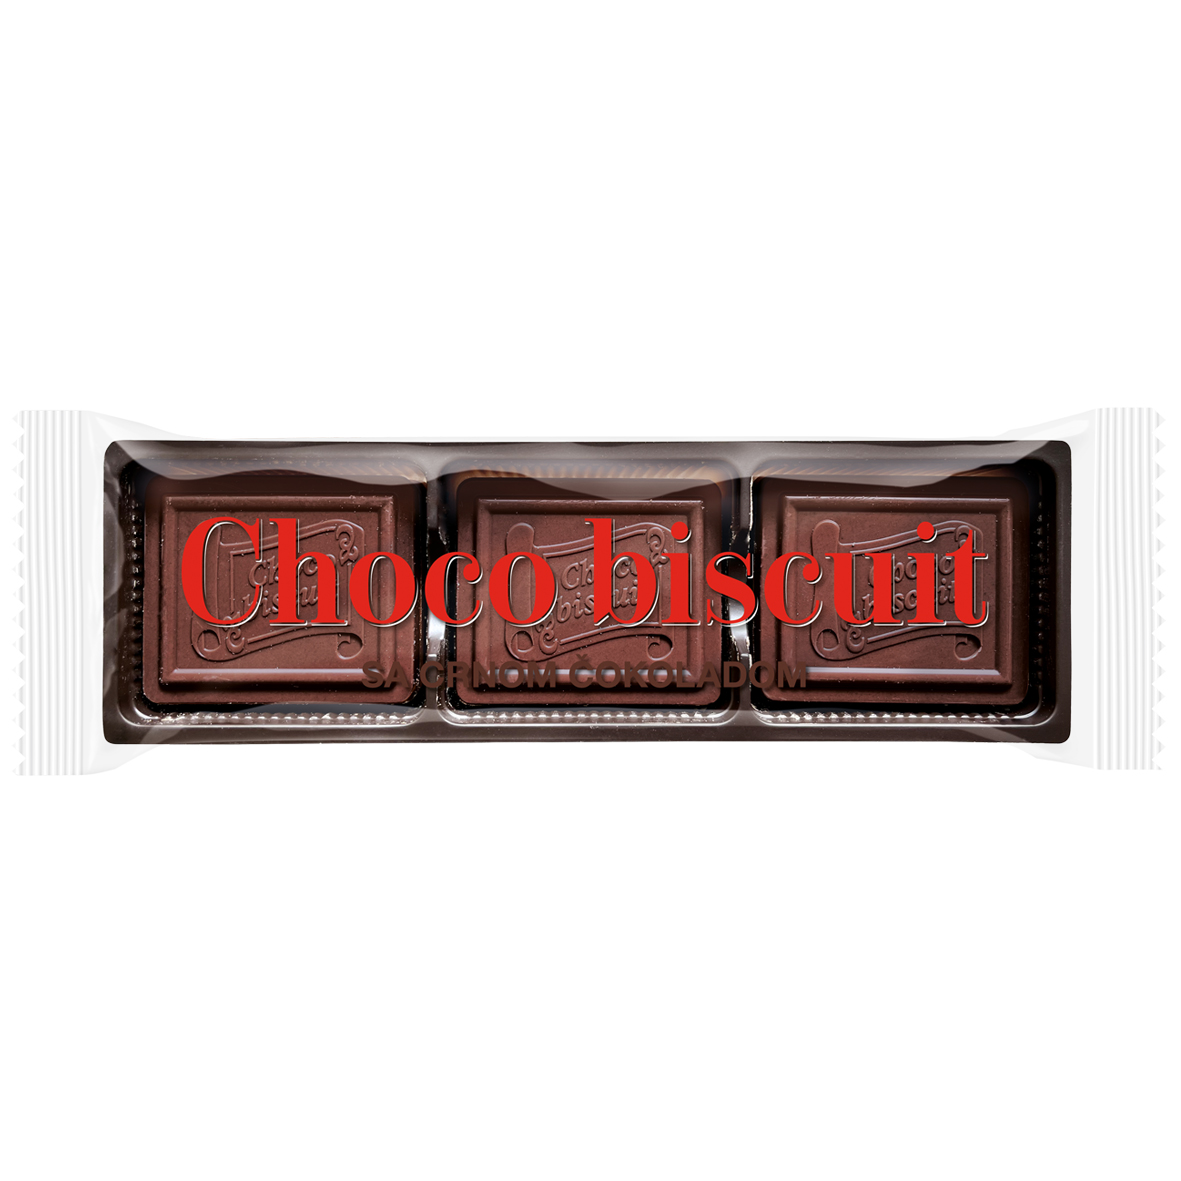 Choco biscuit dark OPP 125g